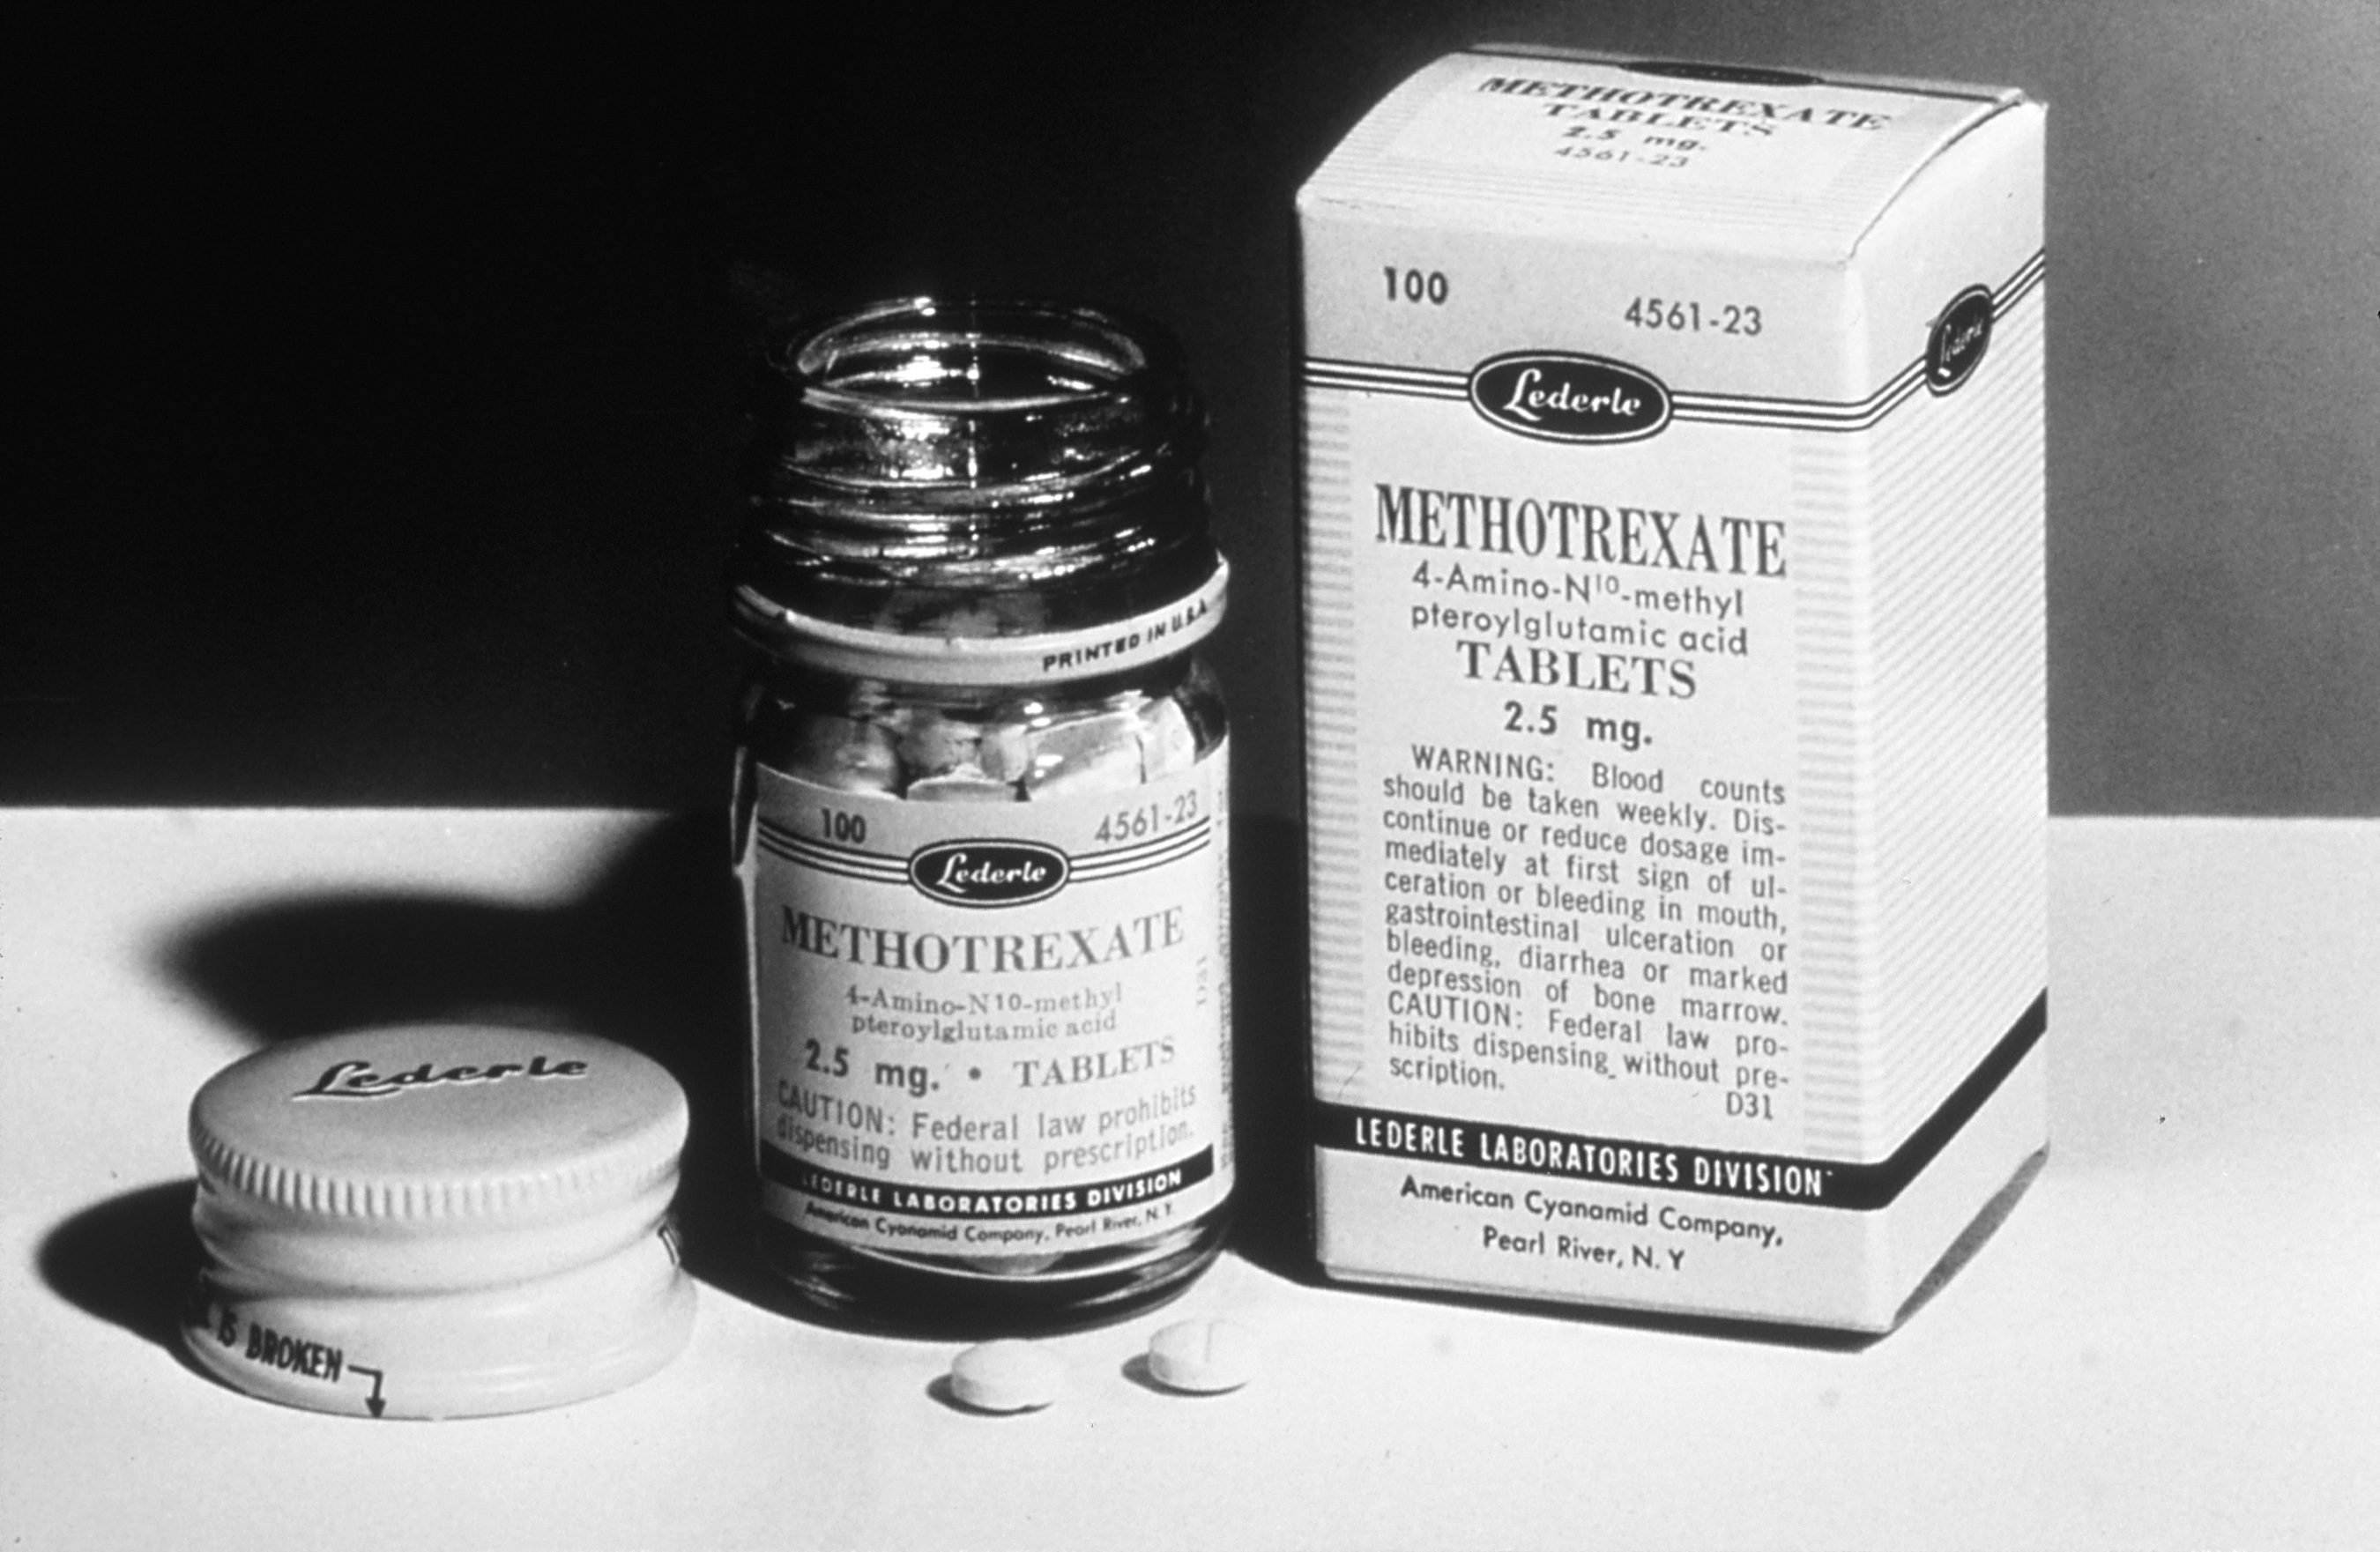 Original Methotrexate packaging